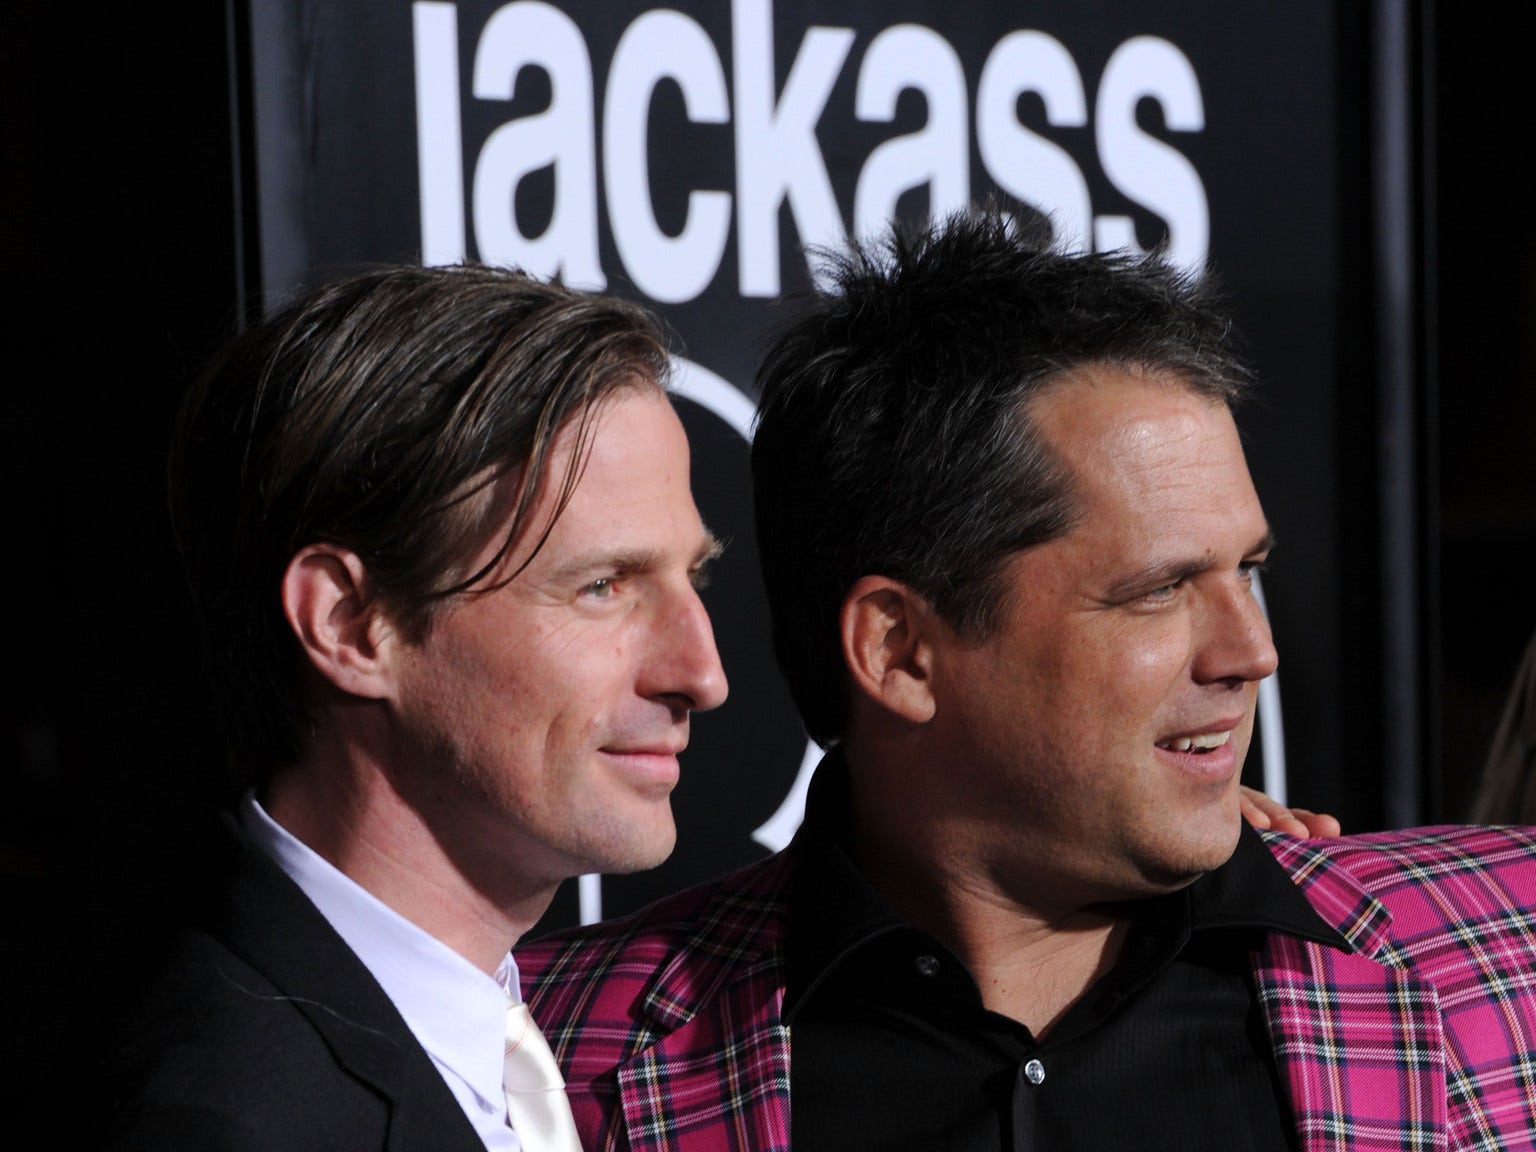 Jackass Forever' looks to stunt its way to box-office win (NASDAQ:VIAC) |  Seeking Alpha